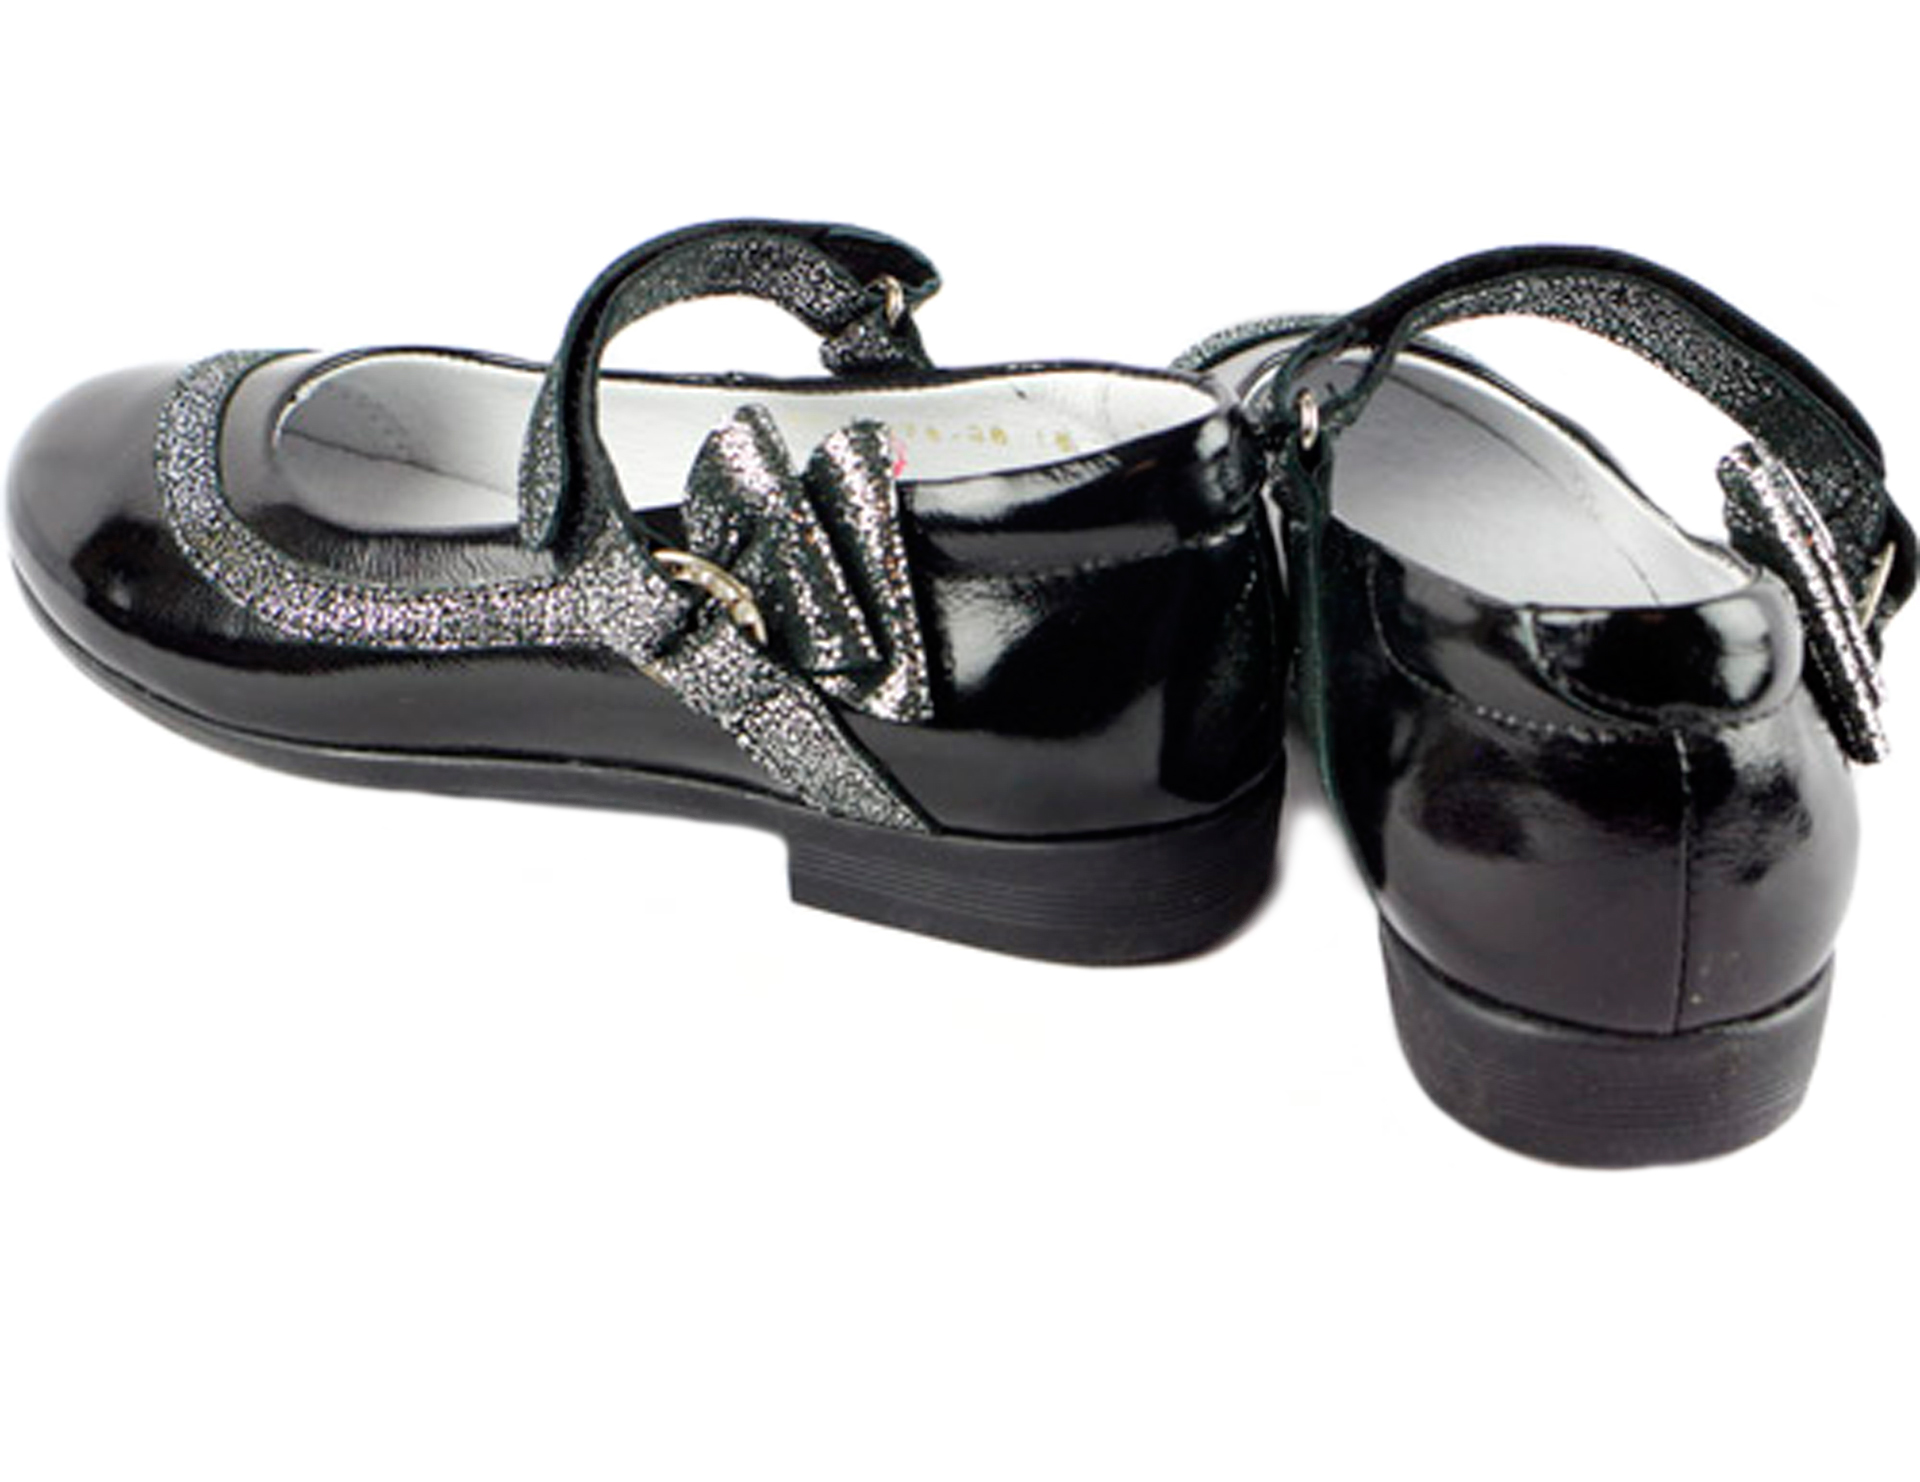 Туфлі шкільні (1862) для дівчинки, матеріал Натуральна шкіра, Чорний колір, 31-35 розміри – Sole Kids. Фото 3